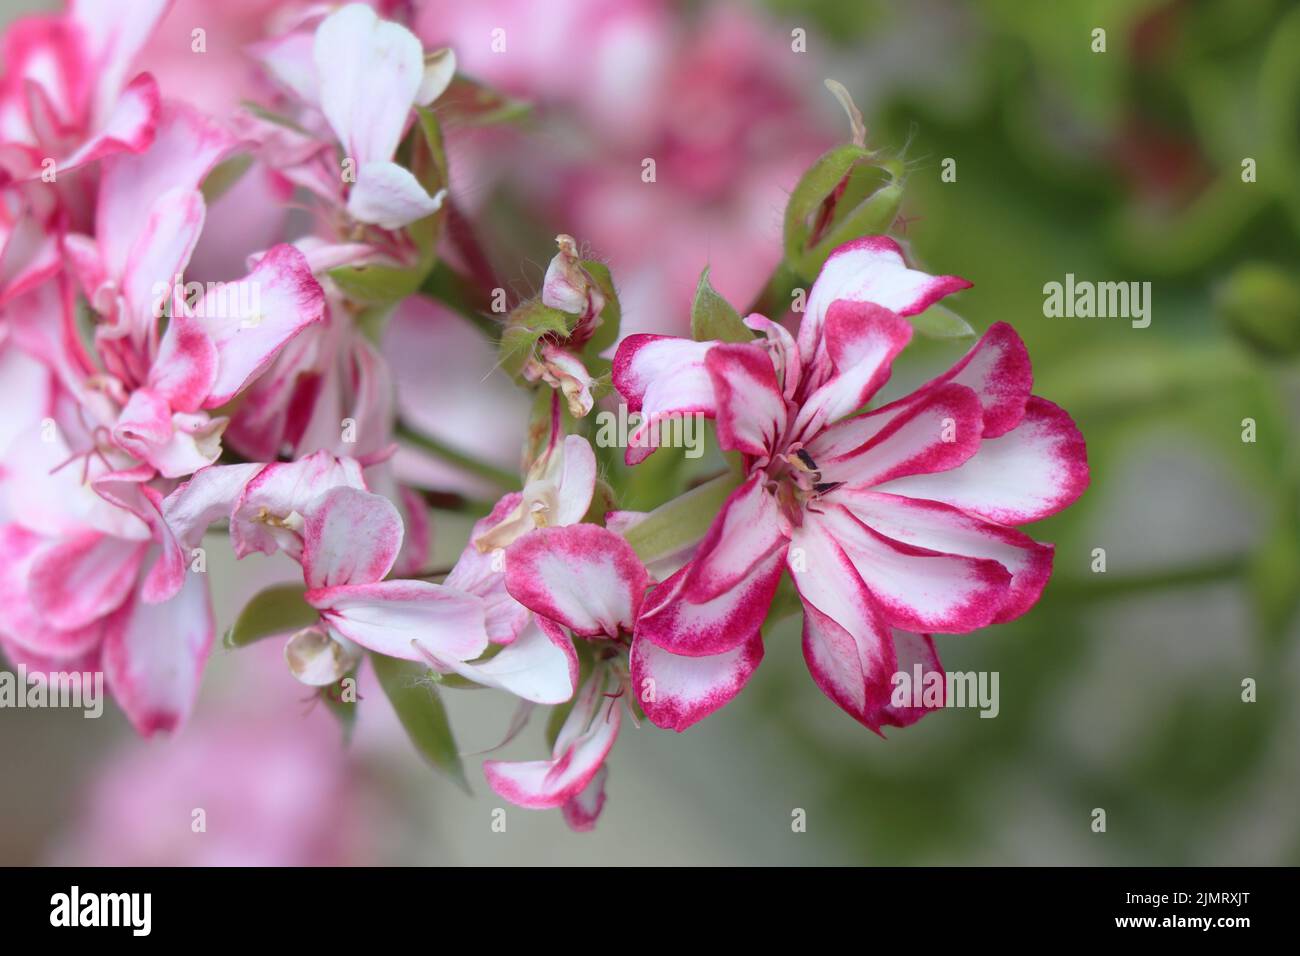 Blooming pink and white Flower  Pelargonium peltatum Stock Photo